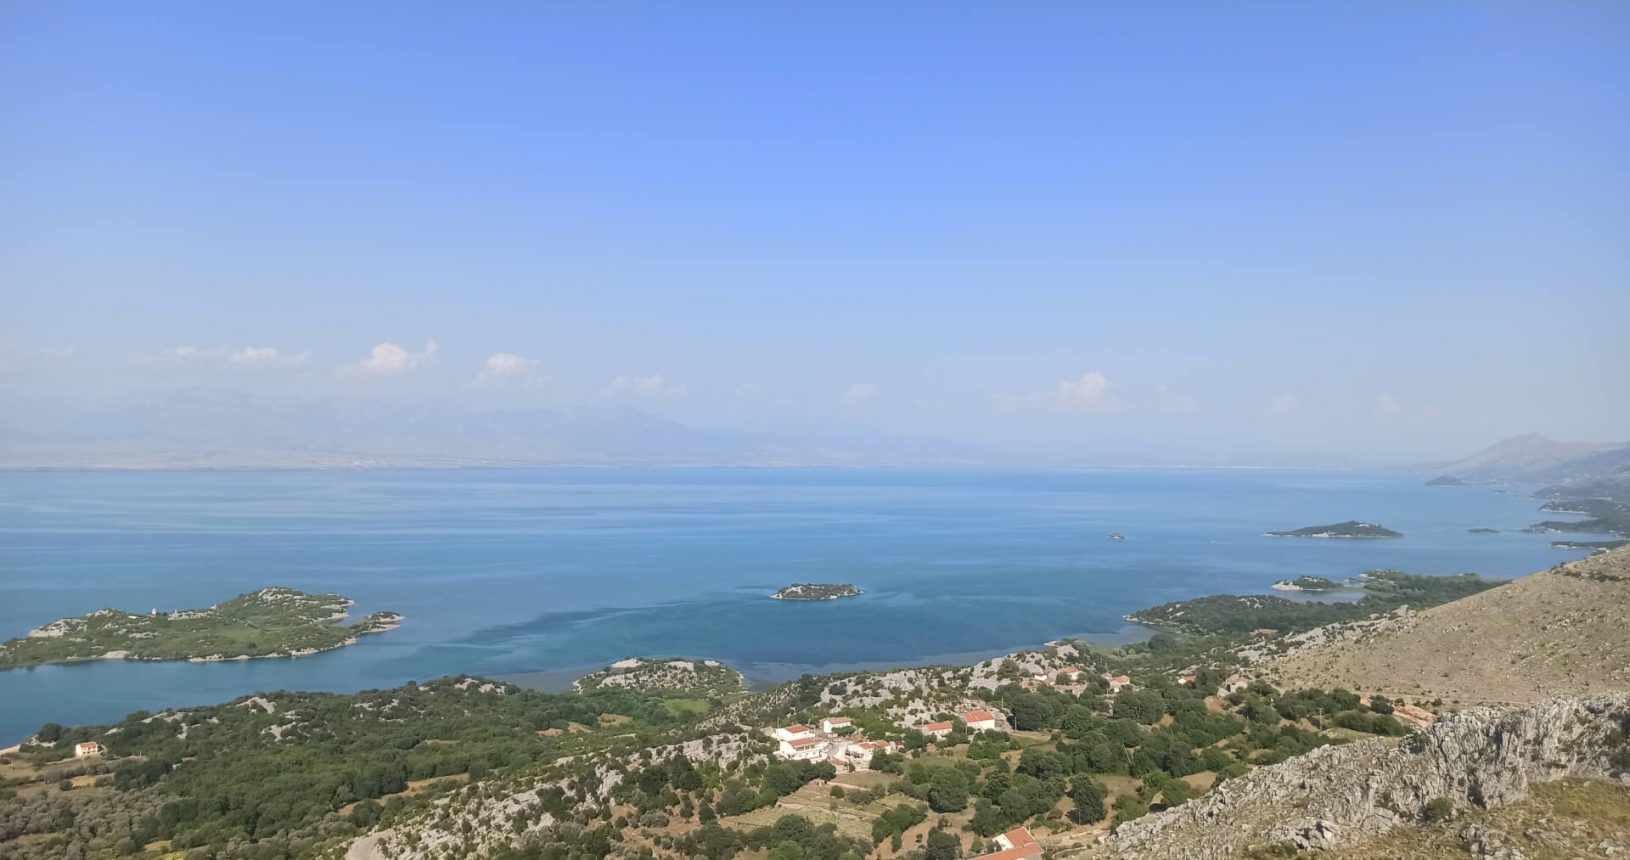 Tiny Islands in Skadar lake. Viewpoint Donji Murici